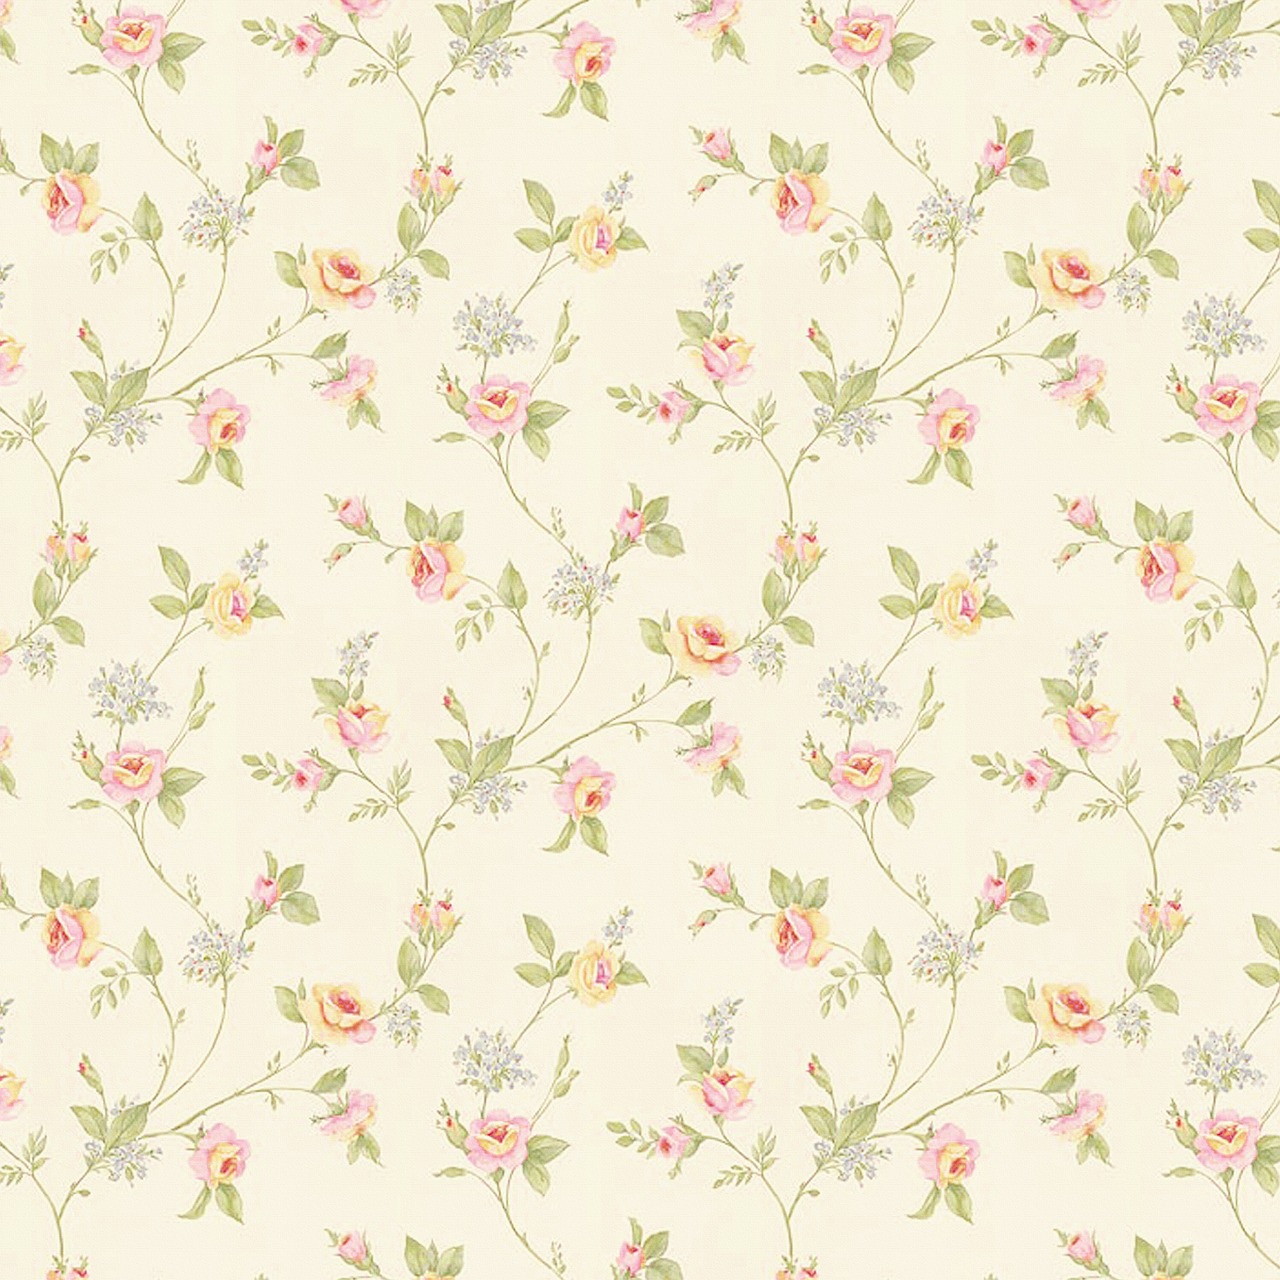 Floral paper,floral background,floral pattern,flower paper,beige